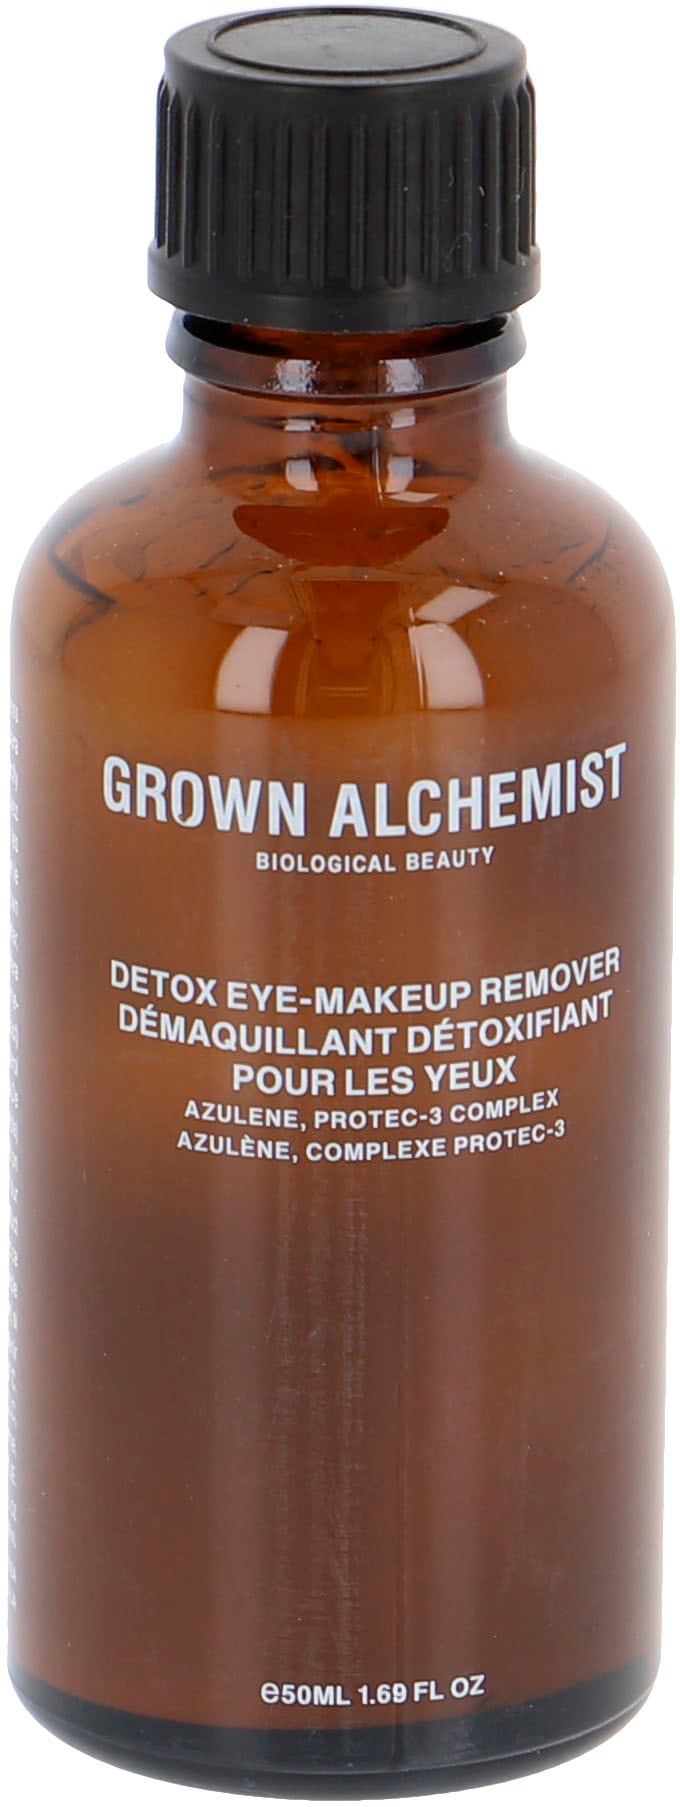 GROWN ALCHEMIST Augen-Make-up-Entferner »Detox Eye-Makeup Remover«, Azulene, Protec-3 Complex